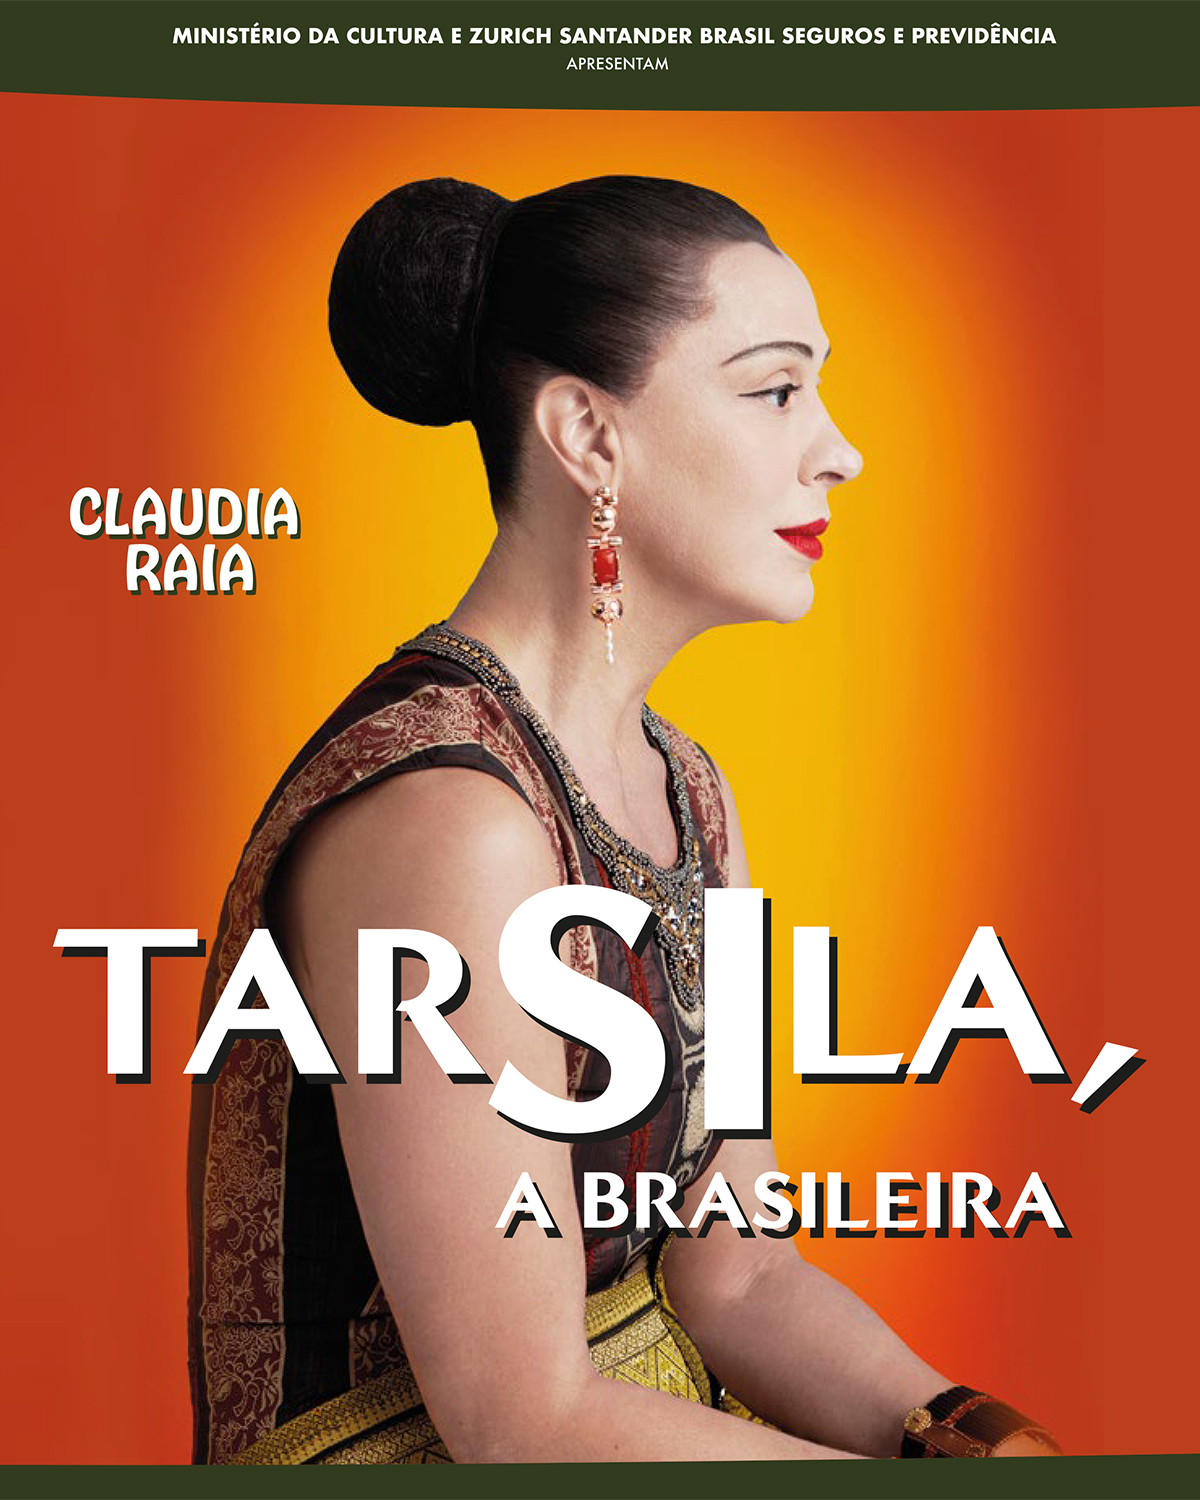 Claudia Raia “Tasila a Brasileira”